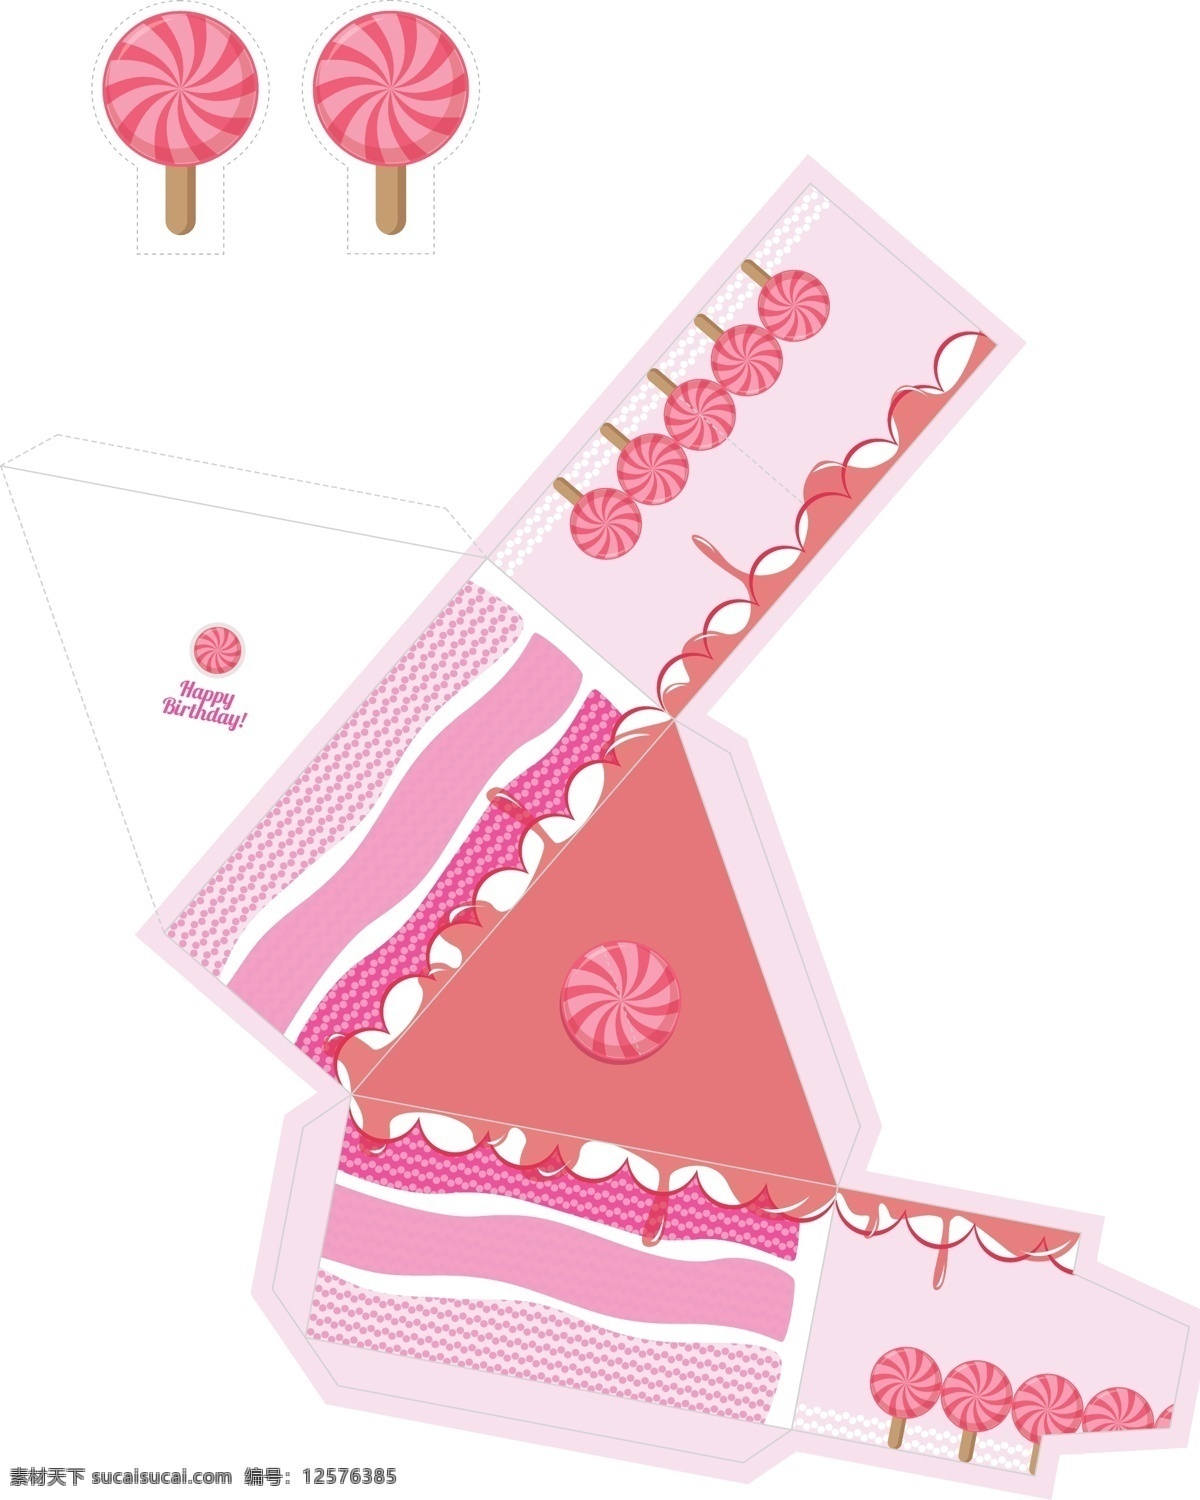 粉色 蛋糕 包装盒 模板 包装 蛋糕包装 糖果展开图 包装盒展开图 包装盒设计 包装盒效果图 甜品甜点包装 甜品和展开图 礼物包装盒 食品包装盒 卡通包装盒 蛋糕盒 中秋月饼盒 包装设计 酒盒包装 糖果 矢量